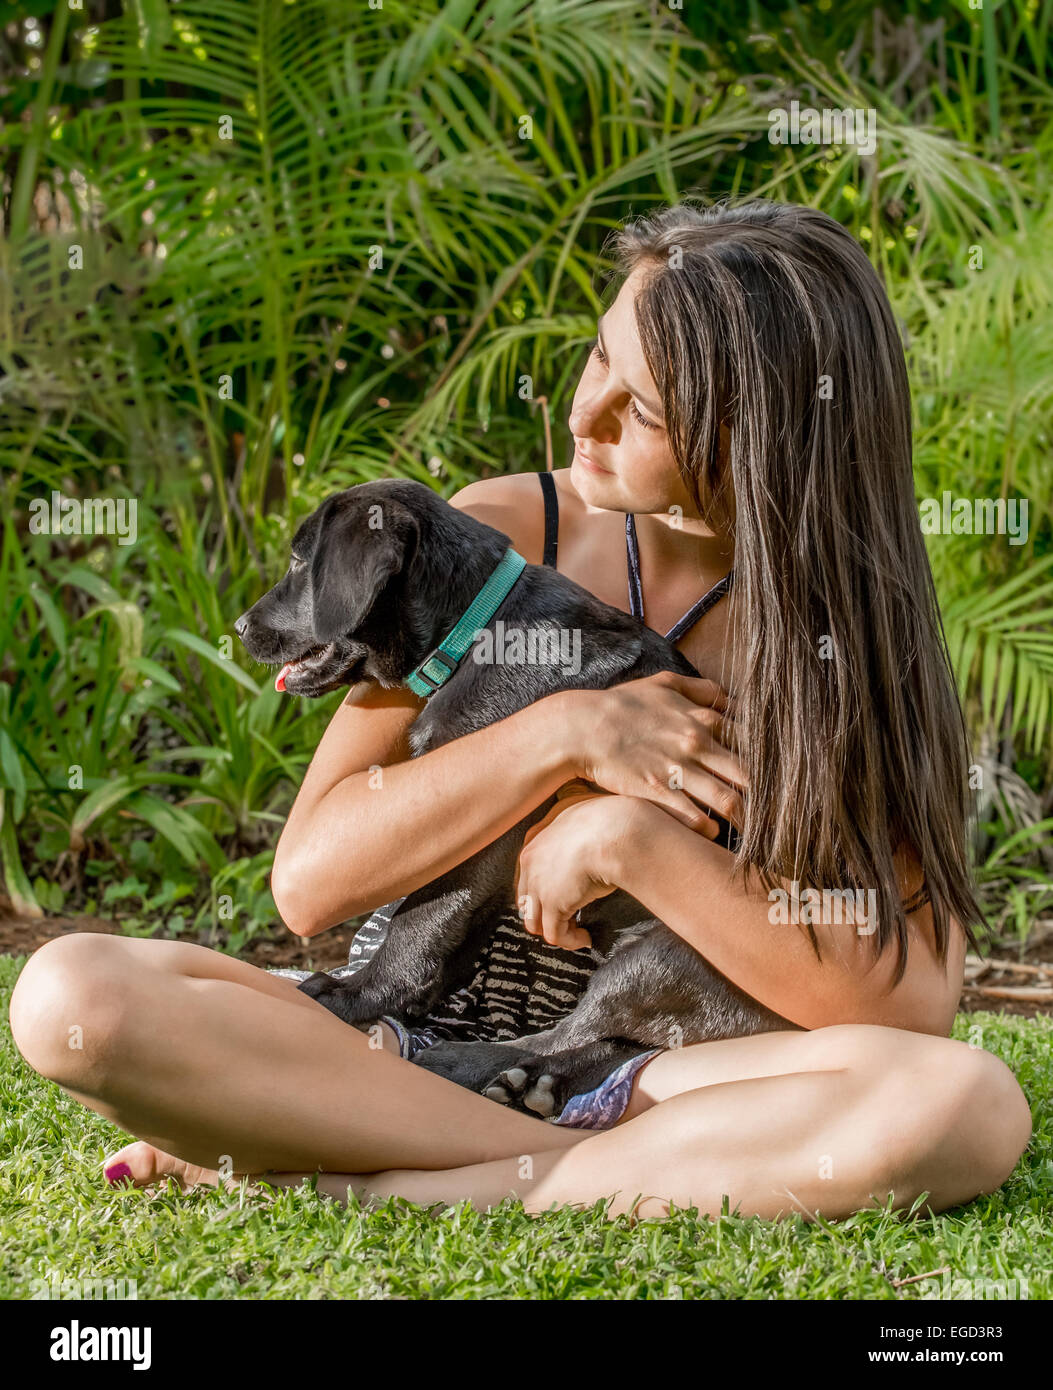 Une jeune adolescente avec de longs cheveux raides s'asseoir sur la pelouse à proximité d'un jardin luxuriant tout en tenant un chiot Labrador noir dans ses bras Banque D'Images